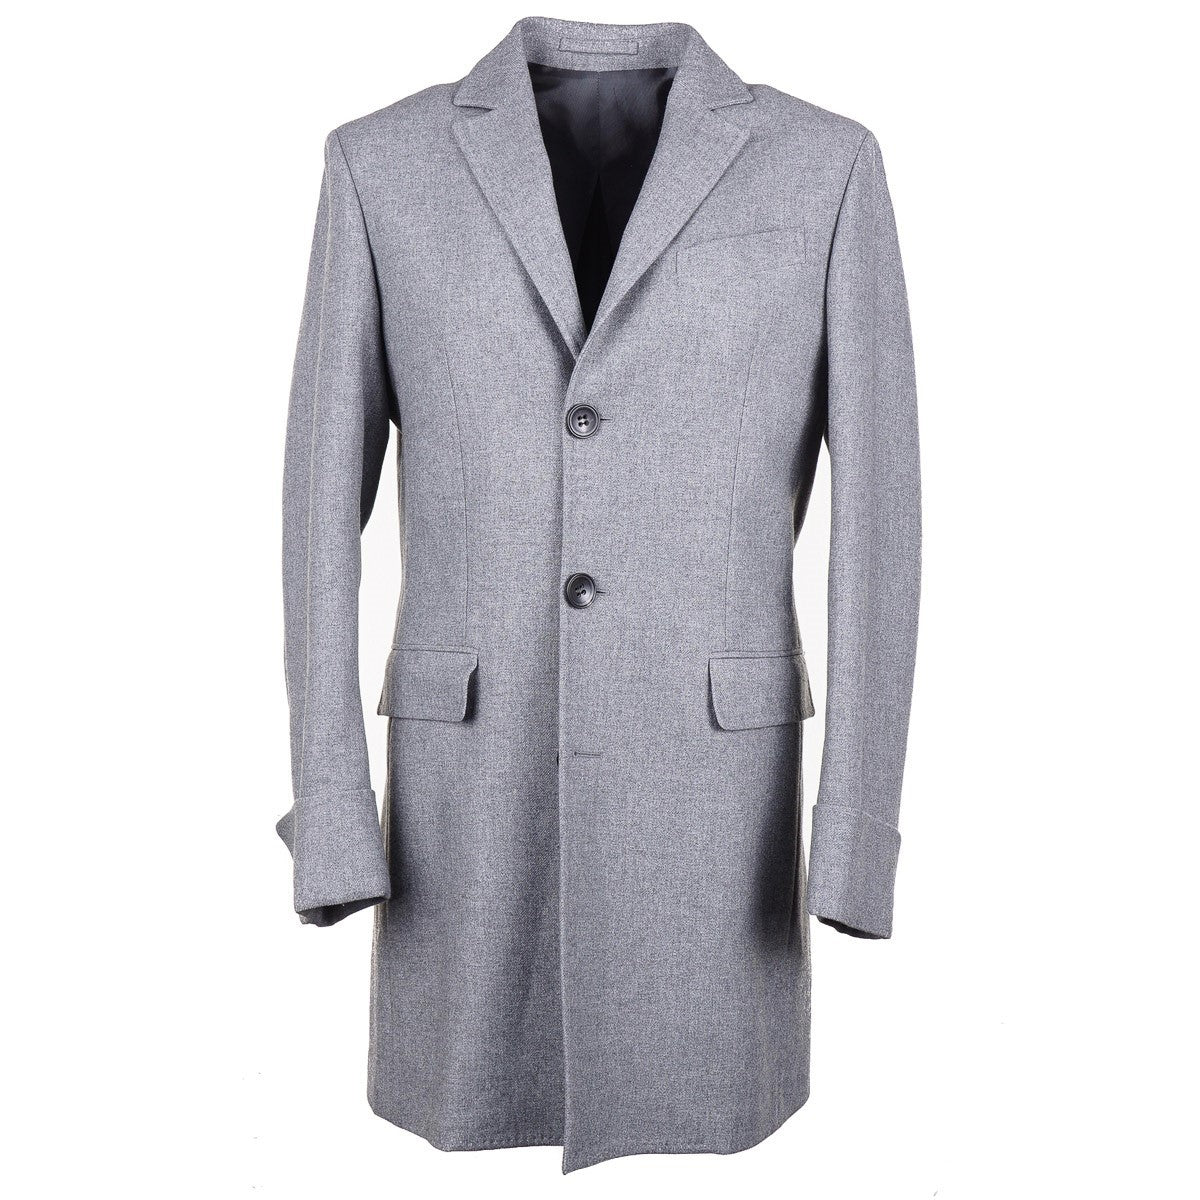 Sartorio Techno Flannel Cashmere Overcoat - Top Shelf Apparel